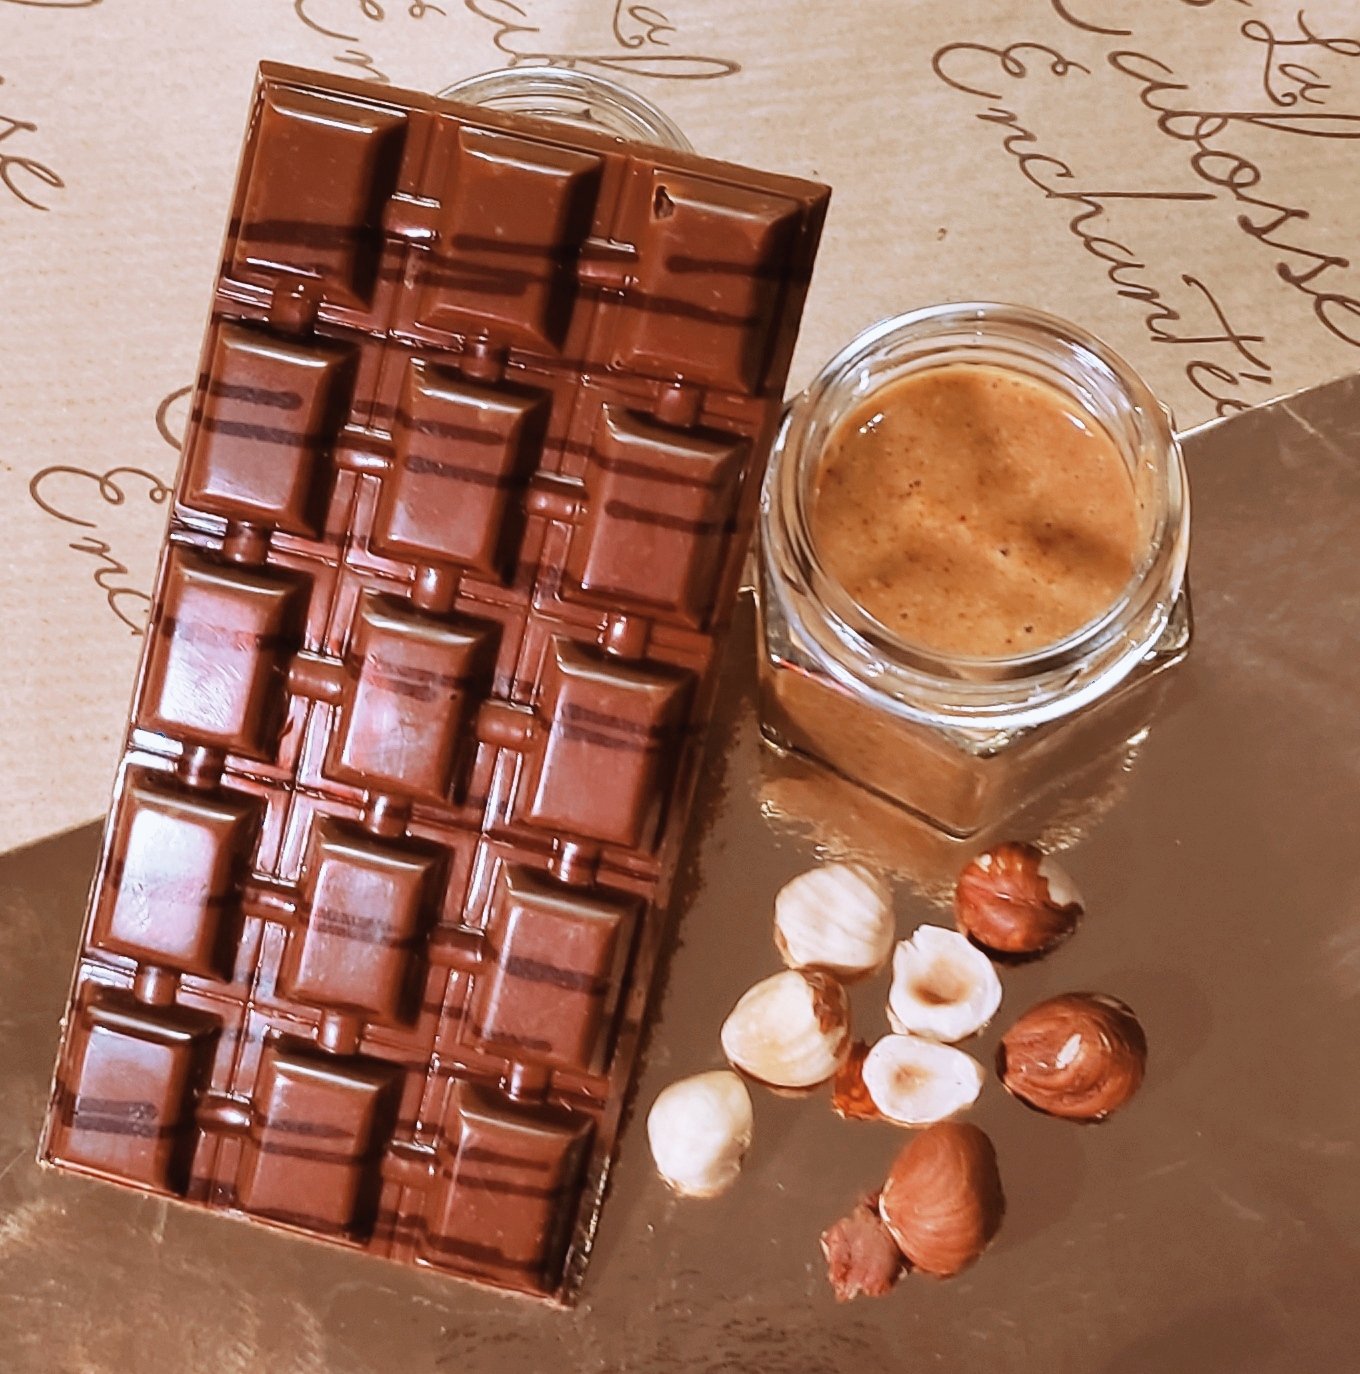 Tablette de Chocolat au Lait Fourrée Praliné - ILE DE RE CHOCOLATS